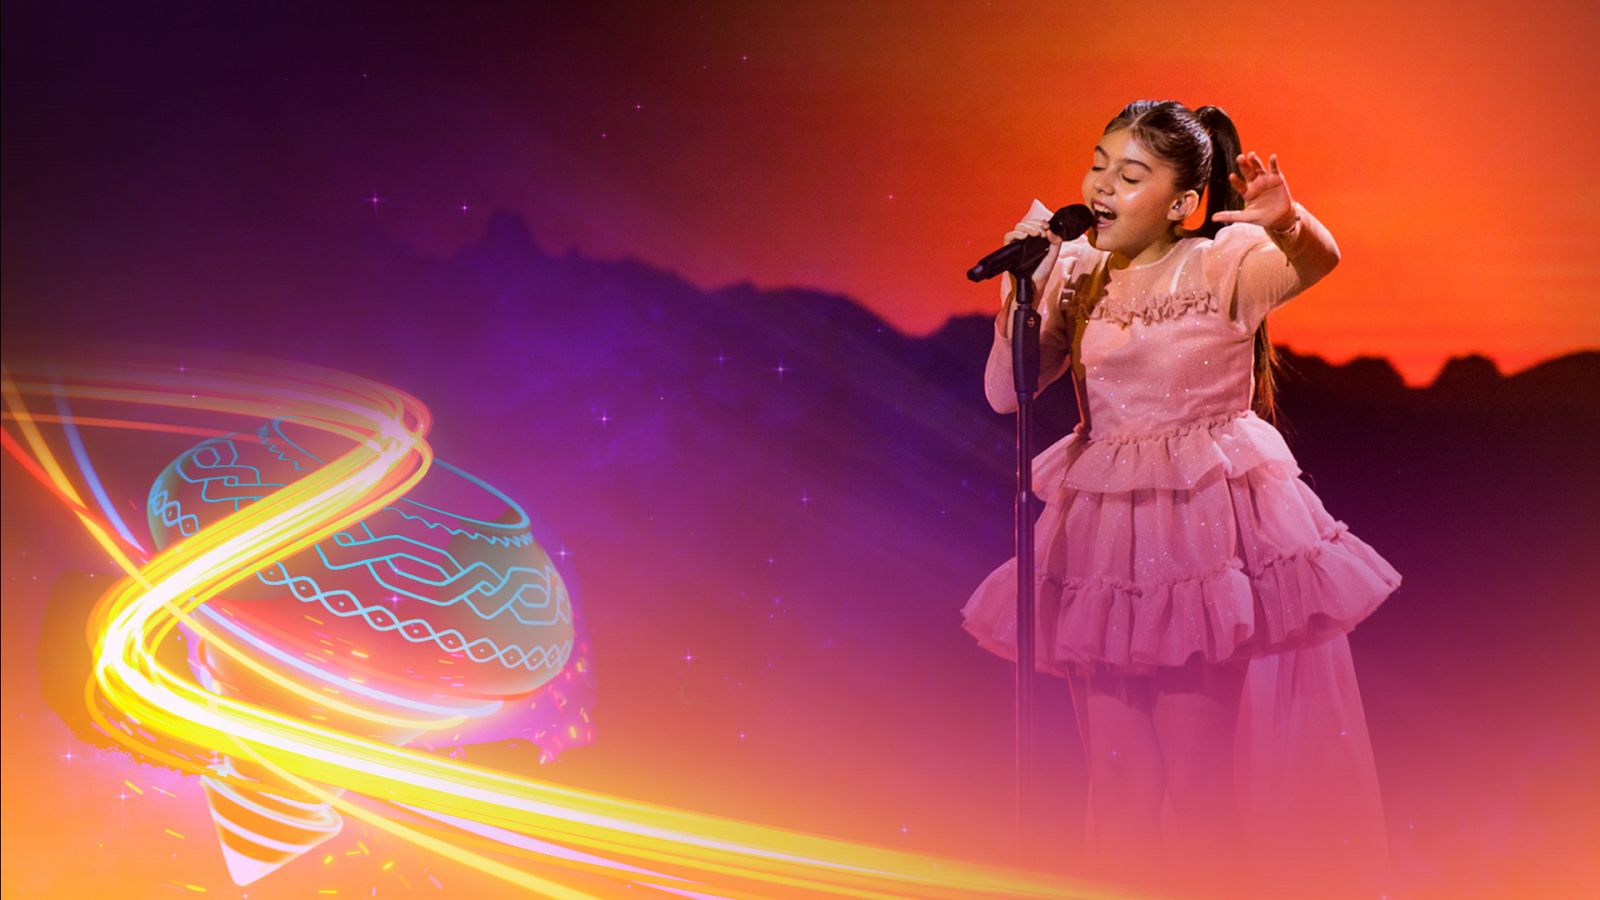 Eurovisión Junior 2022 - Albania: Kejtlin Gjata canta "Pakëz Diell" - Ver ahora